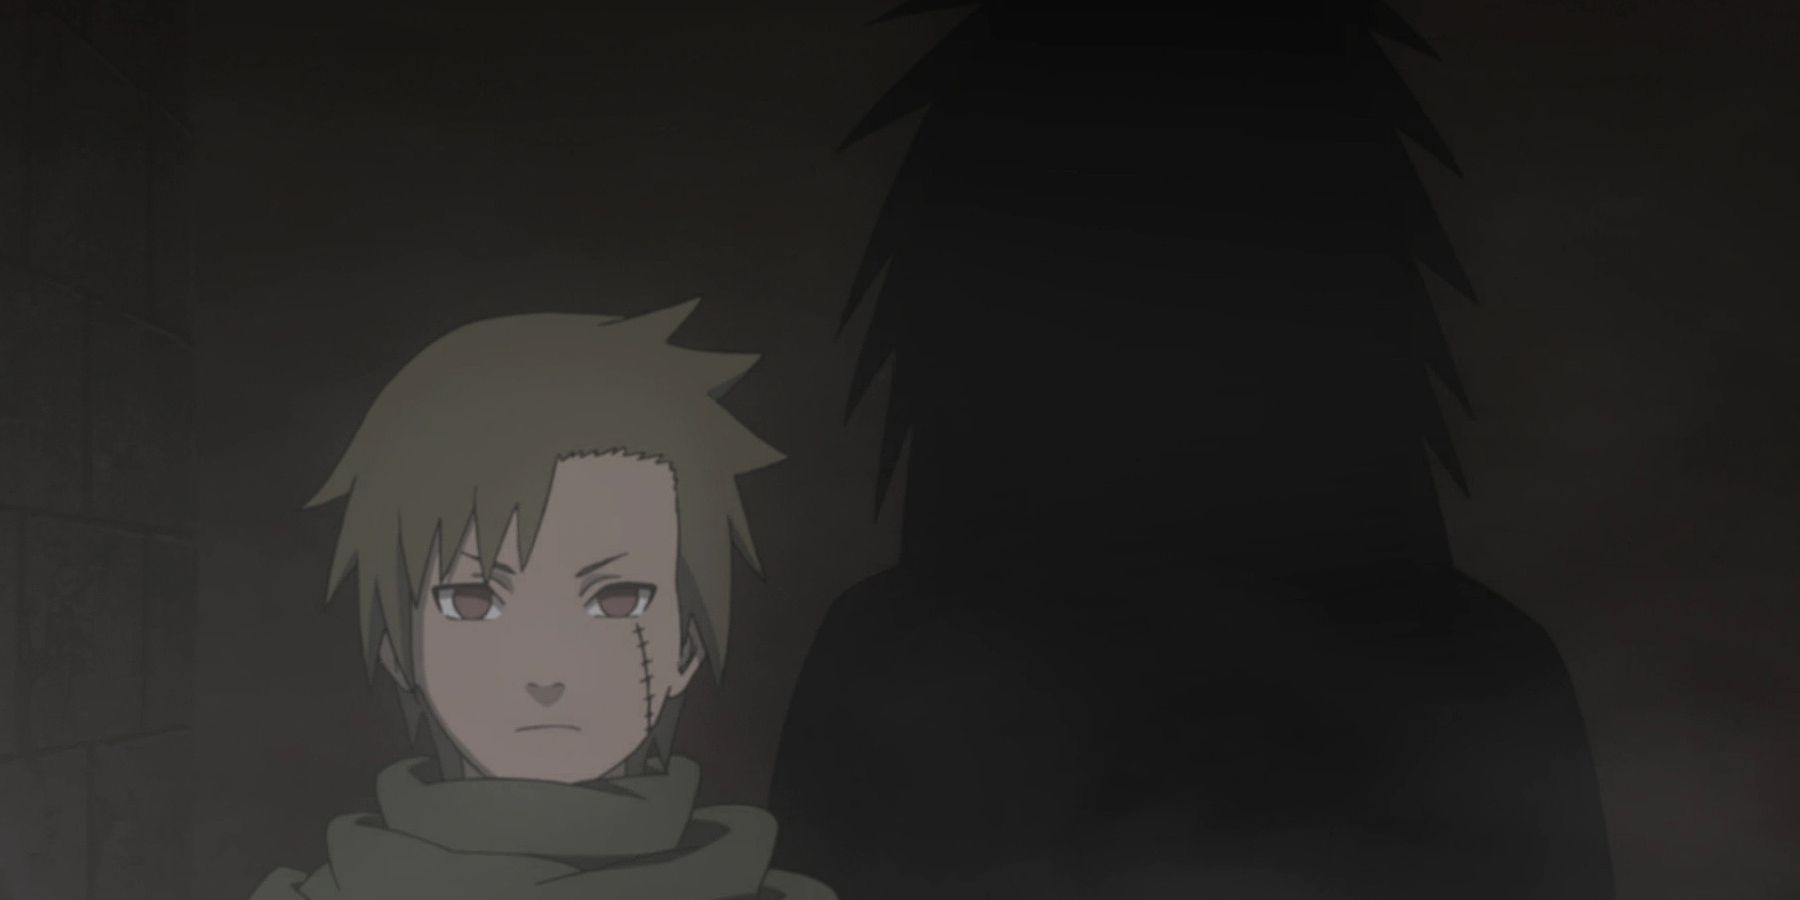 Yagura stands in shadow in Naruto Shippuden